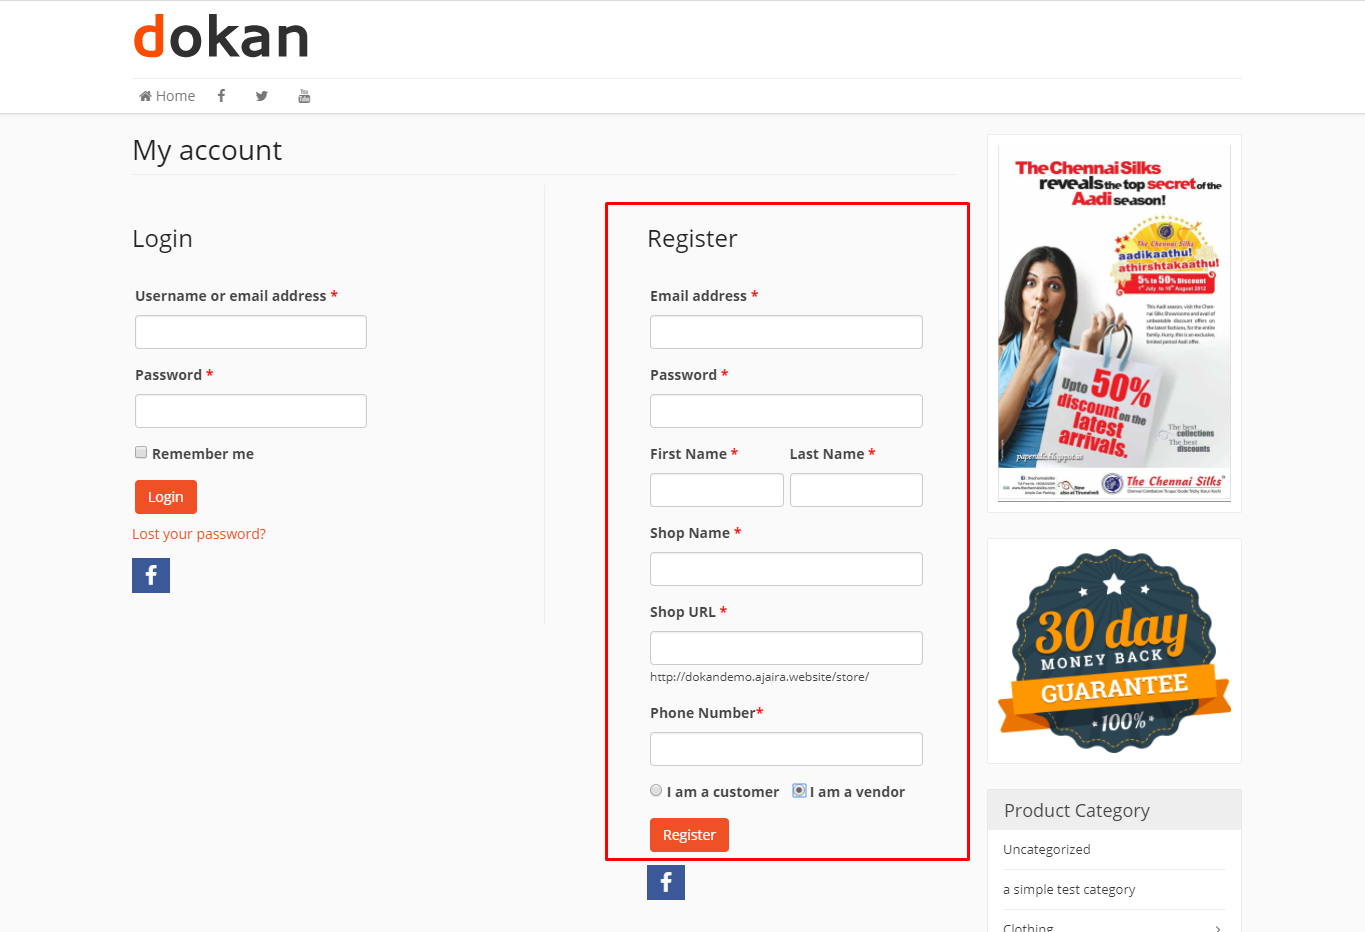 dokan registration form